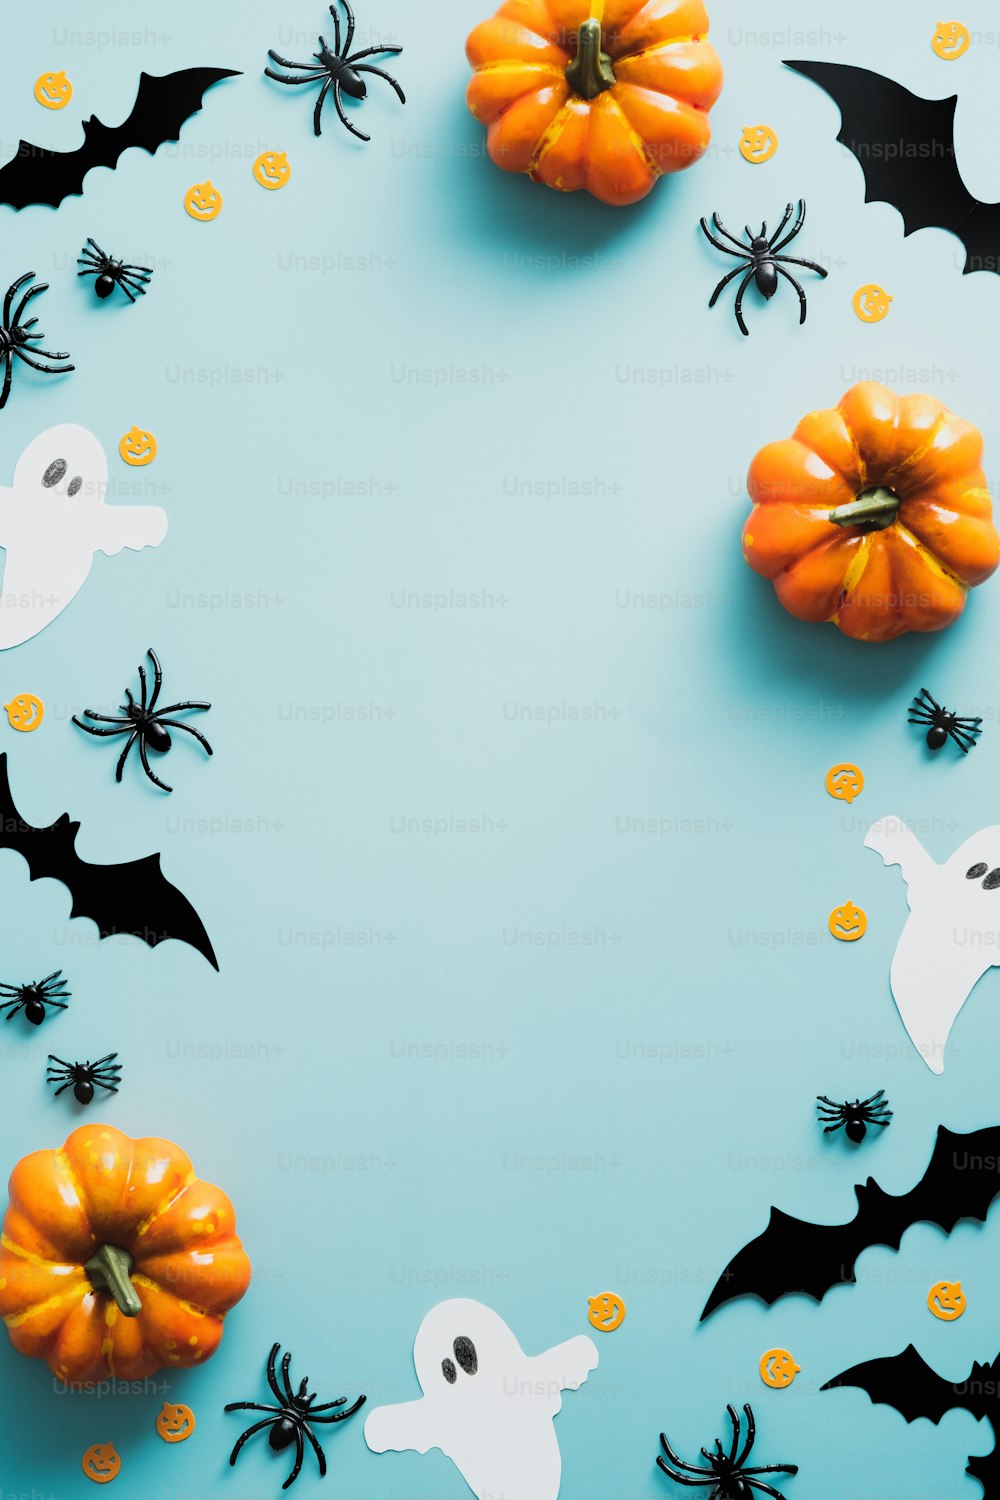 Feliz conceito de feriado de halloween. Decorações de Halloween, morcegos, fantasmas, aranhas, abóboras no fundo azul. Maquete de pôster da festa de Halloween com espaço de cópia. Flat lay, vista superior, sobrecarga.